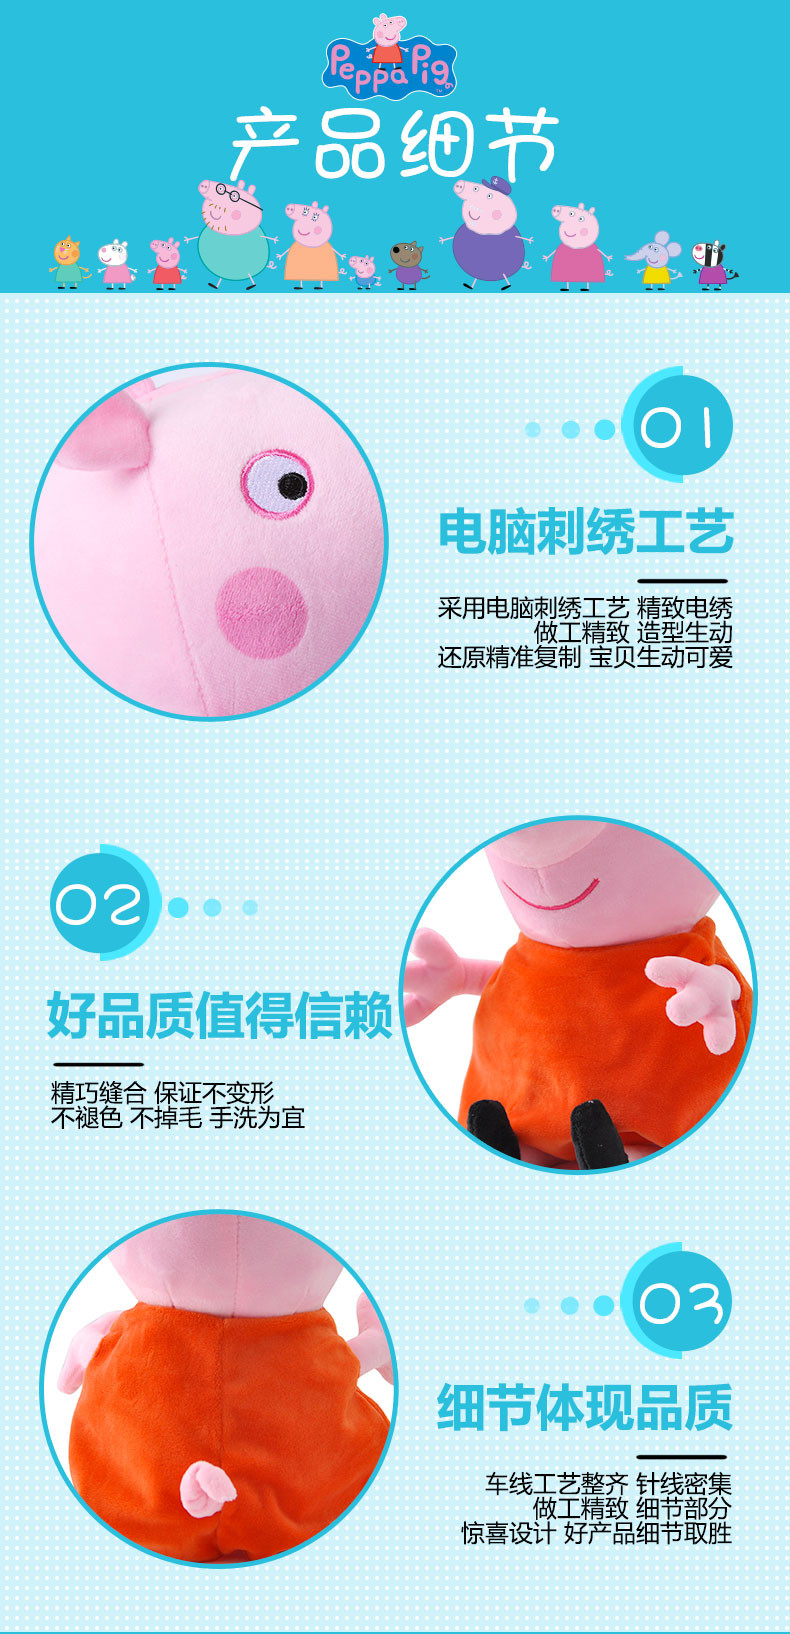 小猪佩奇PeppaPig粉红猪小妹玩具佩佩猪正版毛绒玩具娃娃公仔30cm